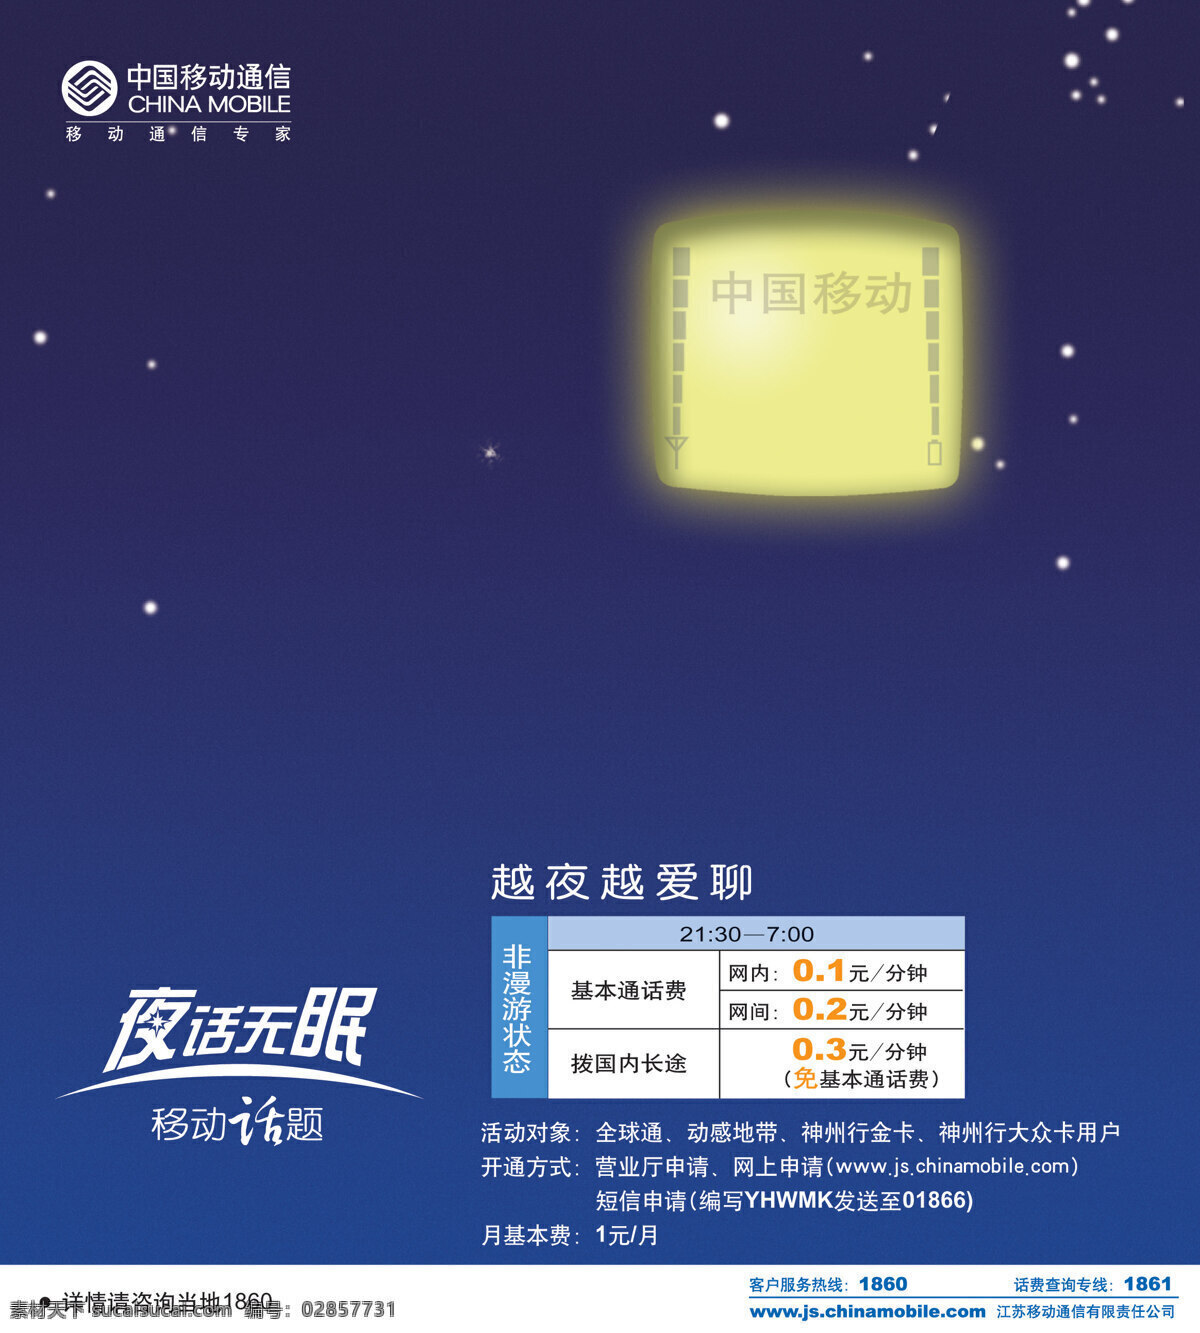 中国移动 通讯 平面创意 jpg0270 设计素材 信息通信 平面设计 蓝色